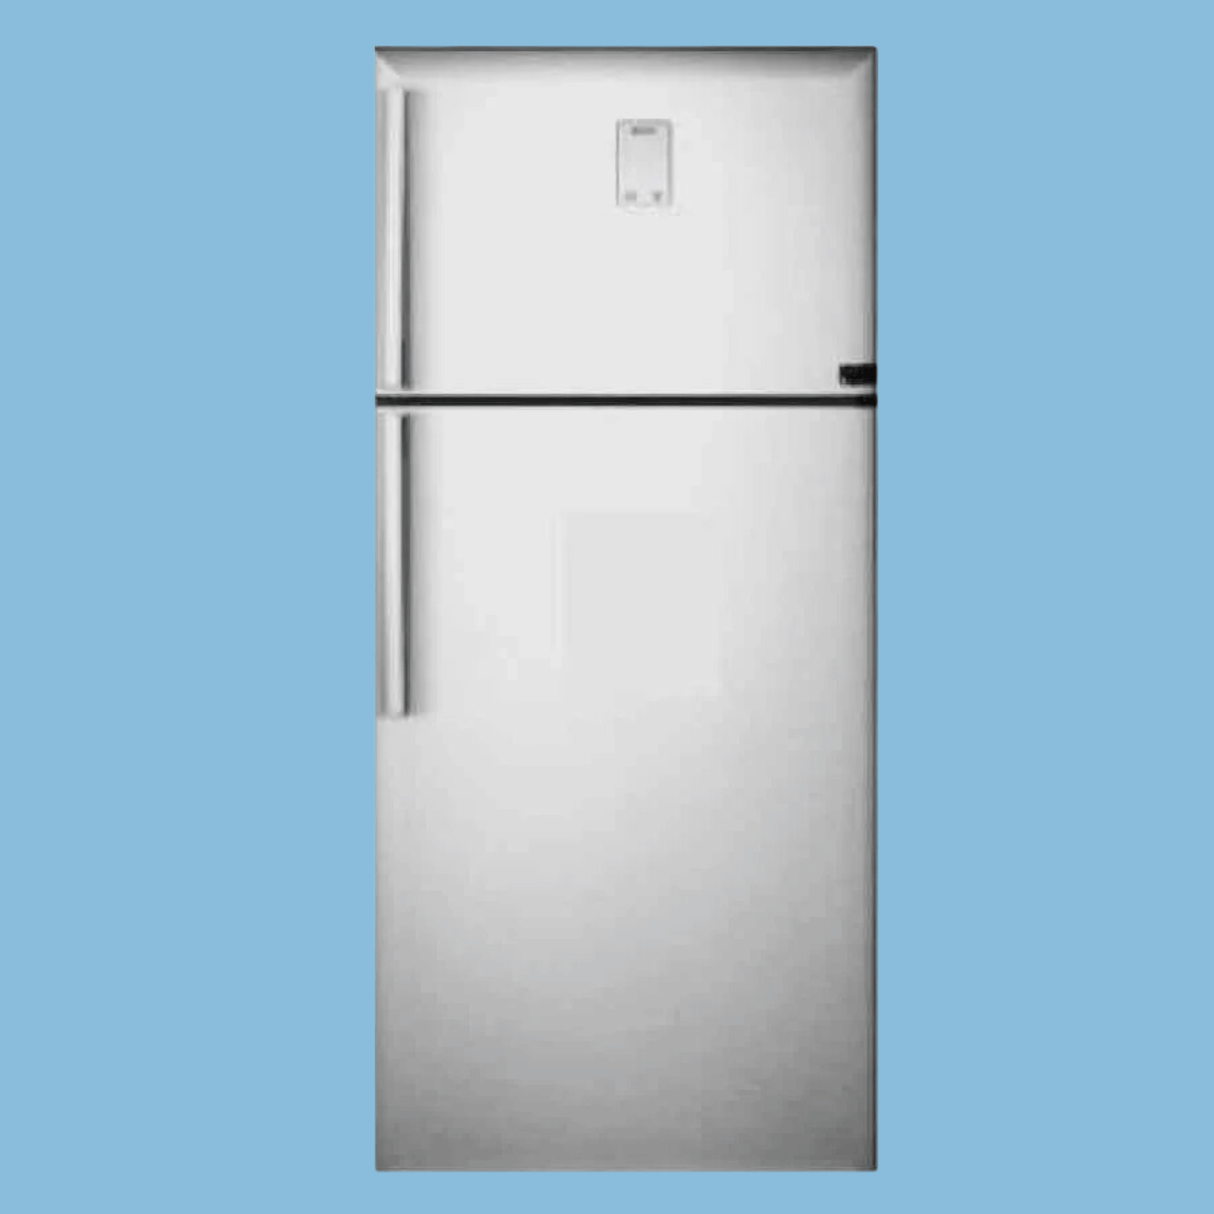 Samsung 560L Fridge RT56 K6341SL; Double Door Frost Free Refrigerator | Twin Cooling |Top Mount Freezer – Inox.